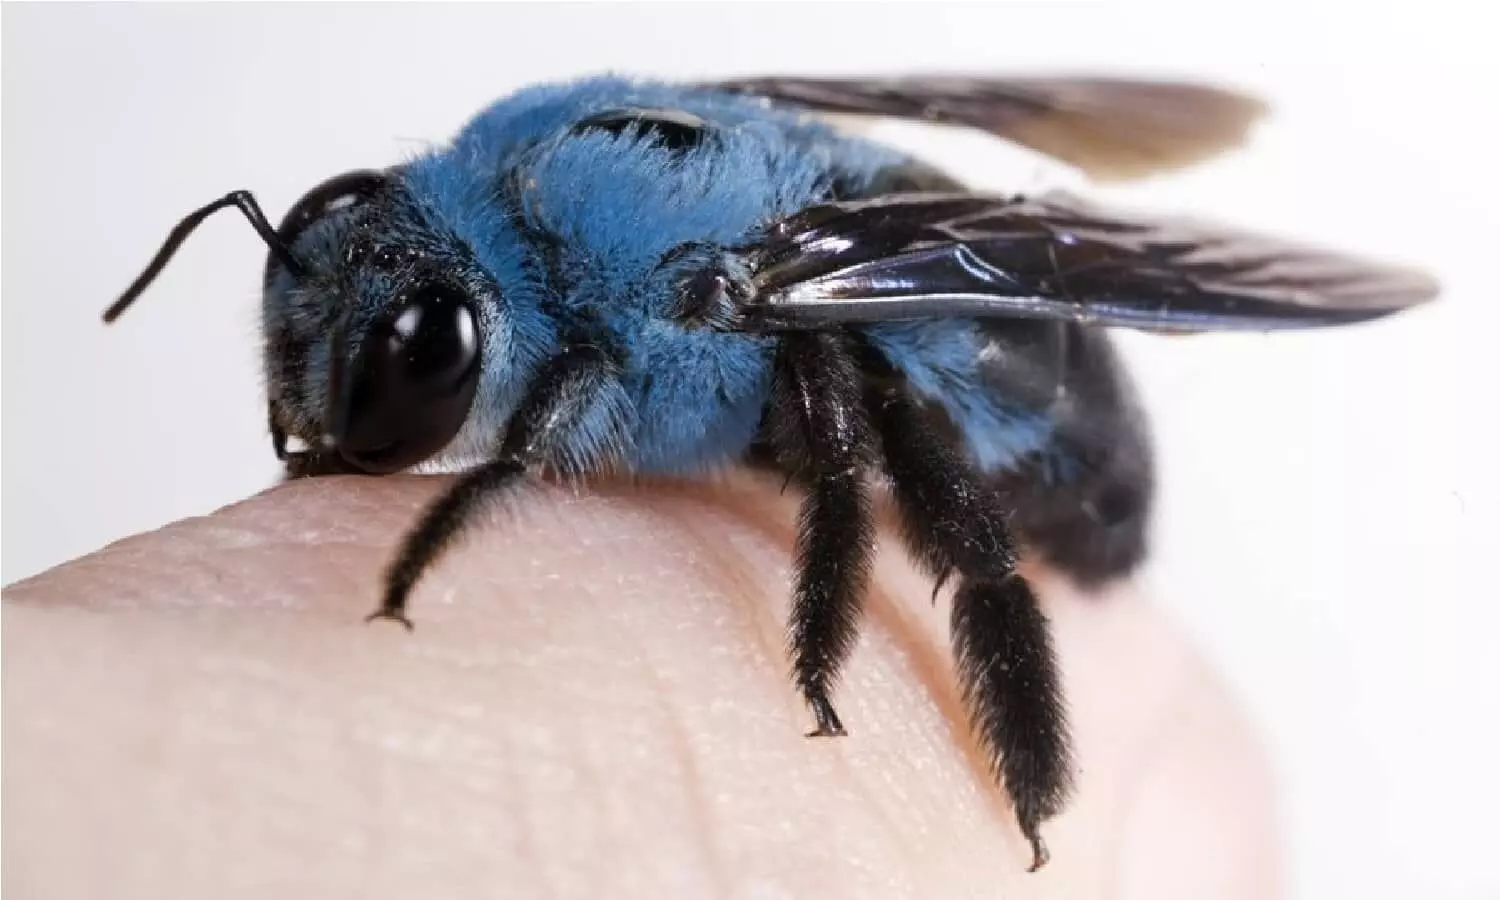 Body Fly: अगर ये मक्खी आपके आंख के नीचे मंडरा रही है तो समझ ले 1 महीने के अंदर होने वाली है आपकी मौत, जानिए